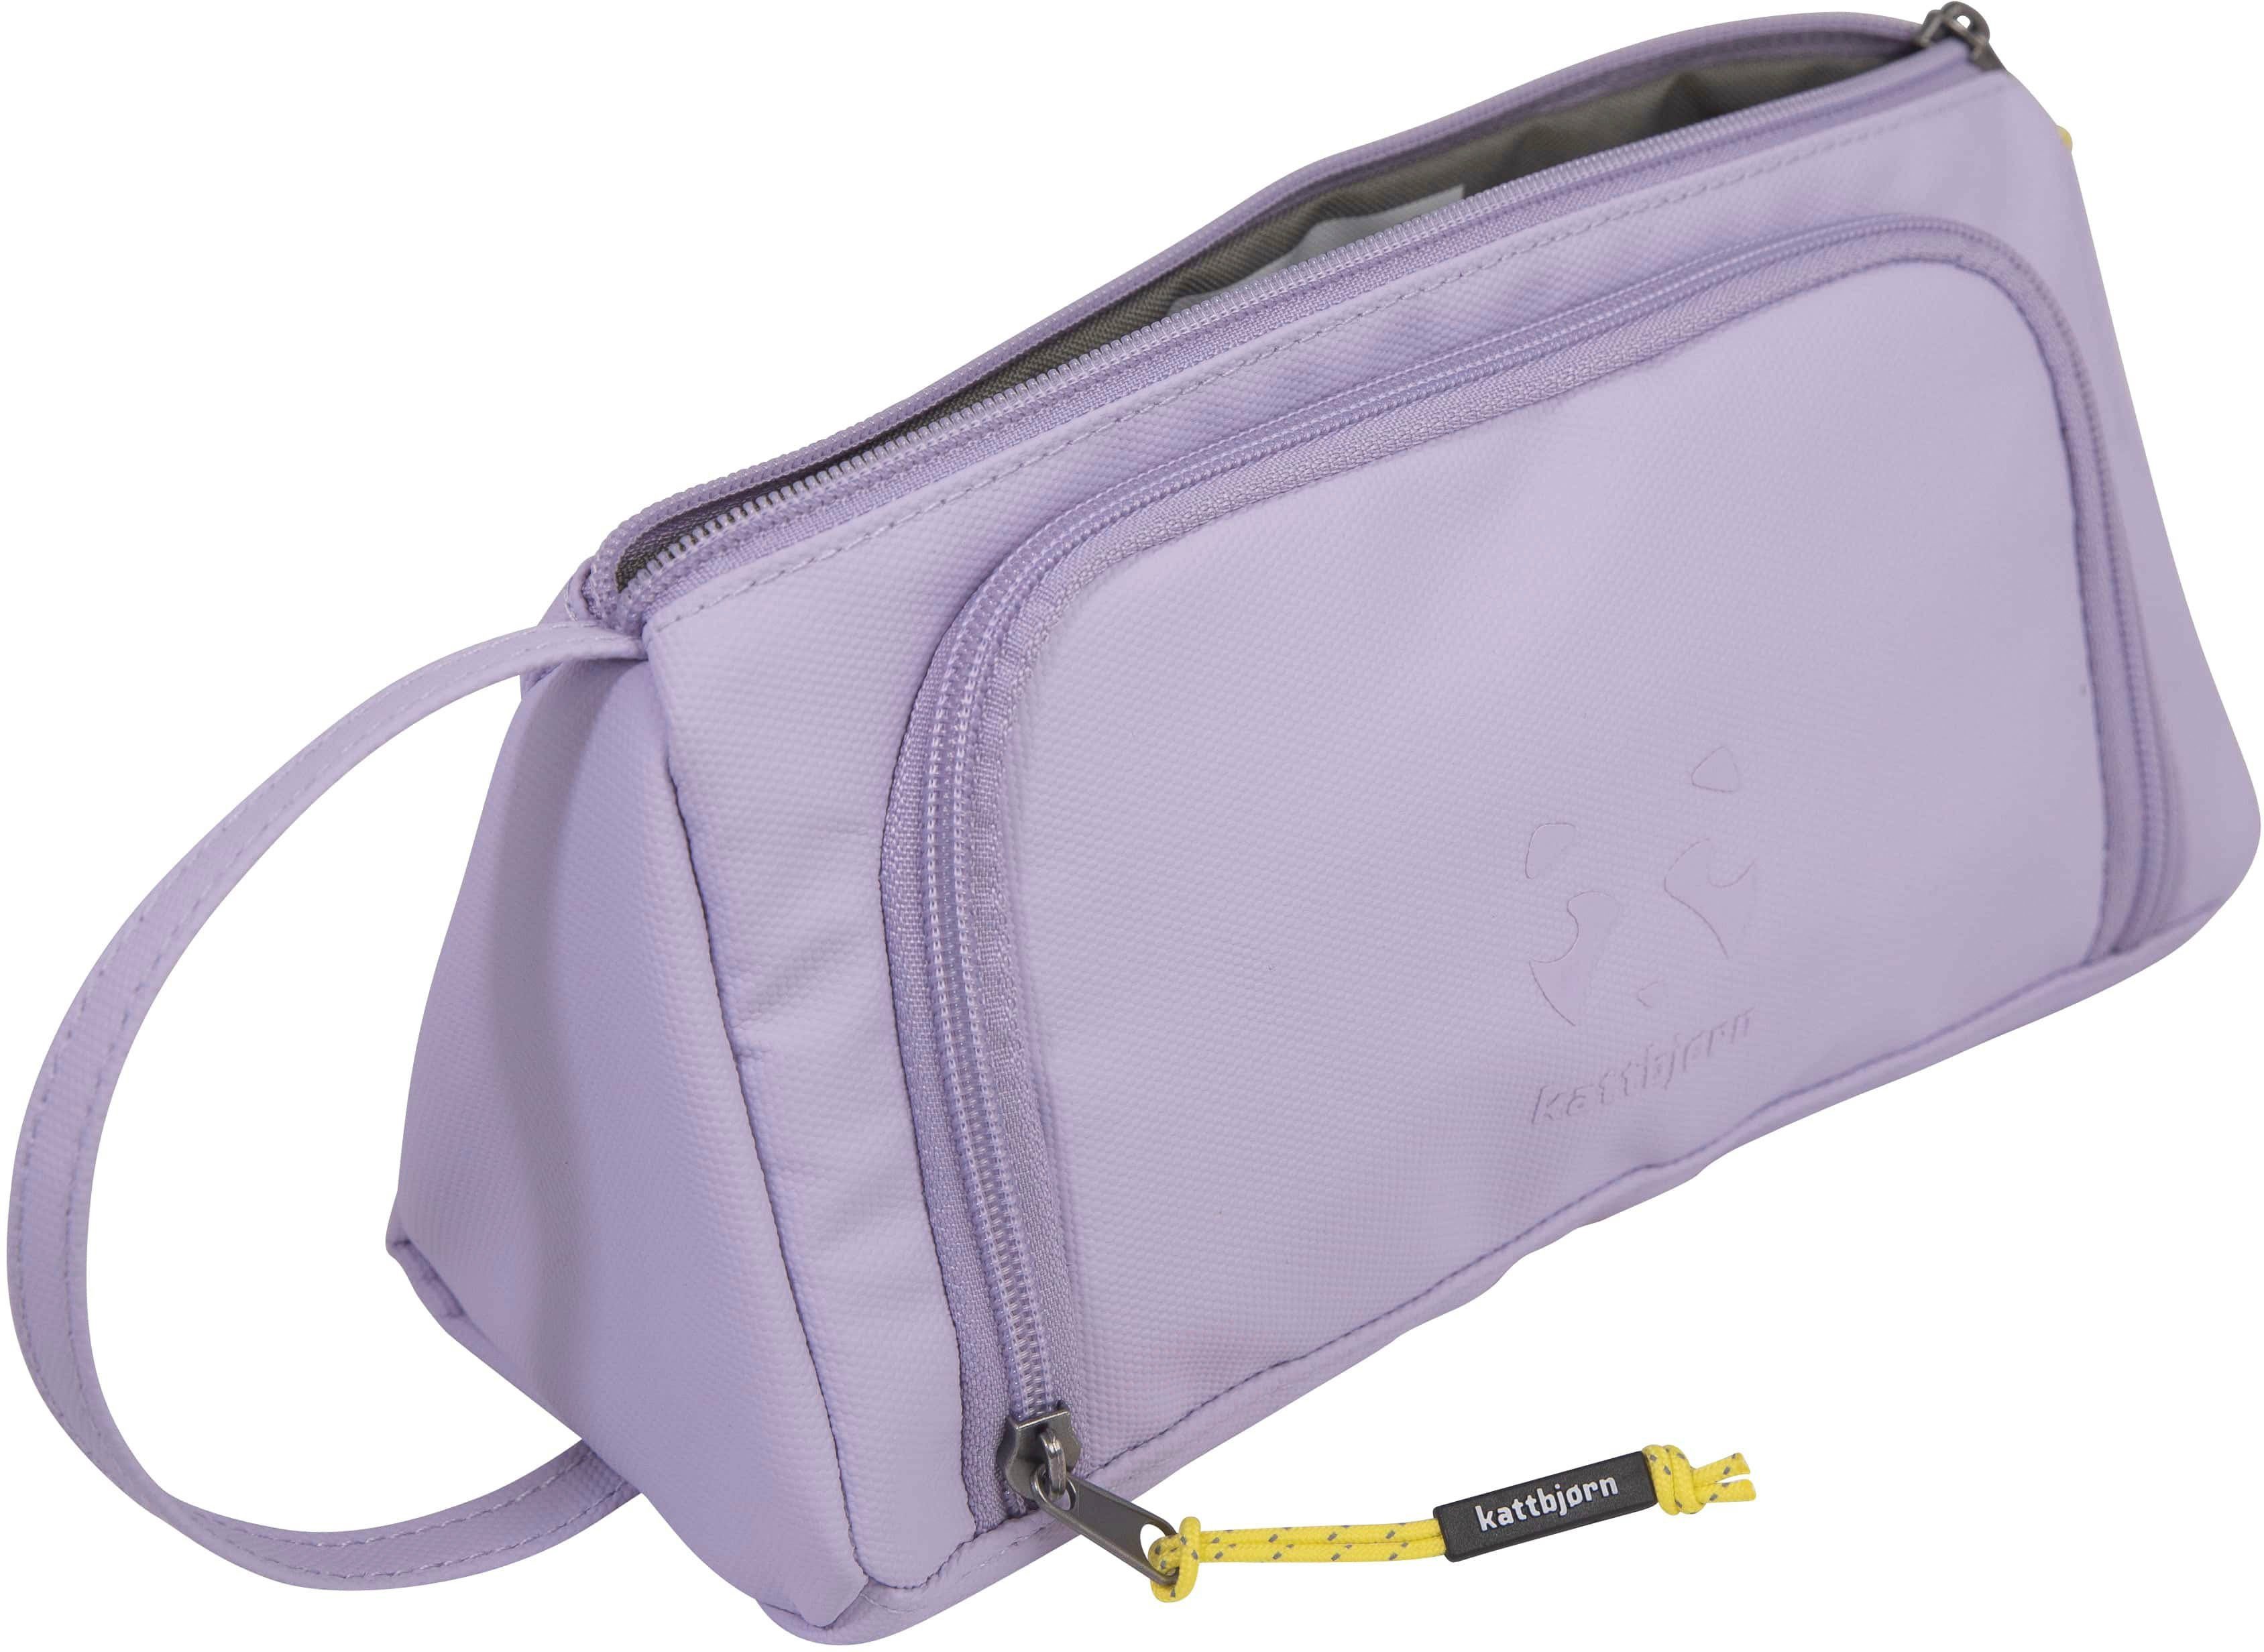 KATTBJØRN Federtasche Swag Bag, Purple Power, alle Innen- und Außenstoffe aus recyceltem PET | Federmäppchen